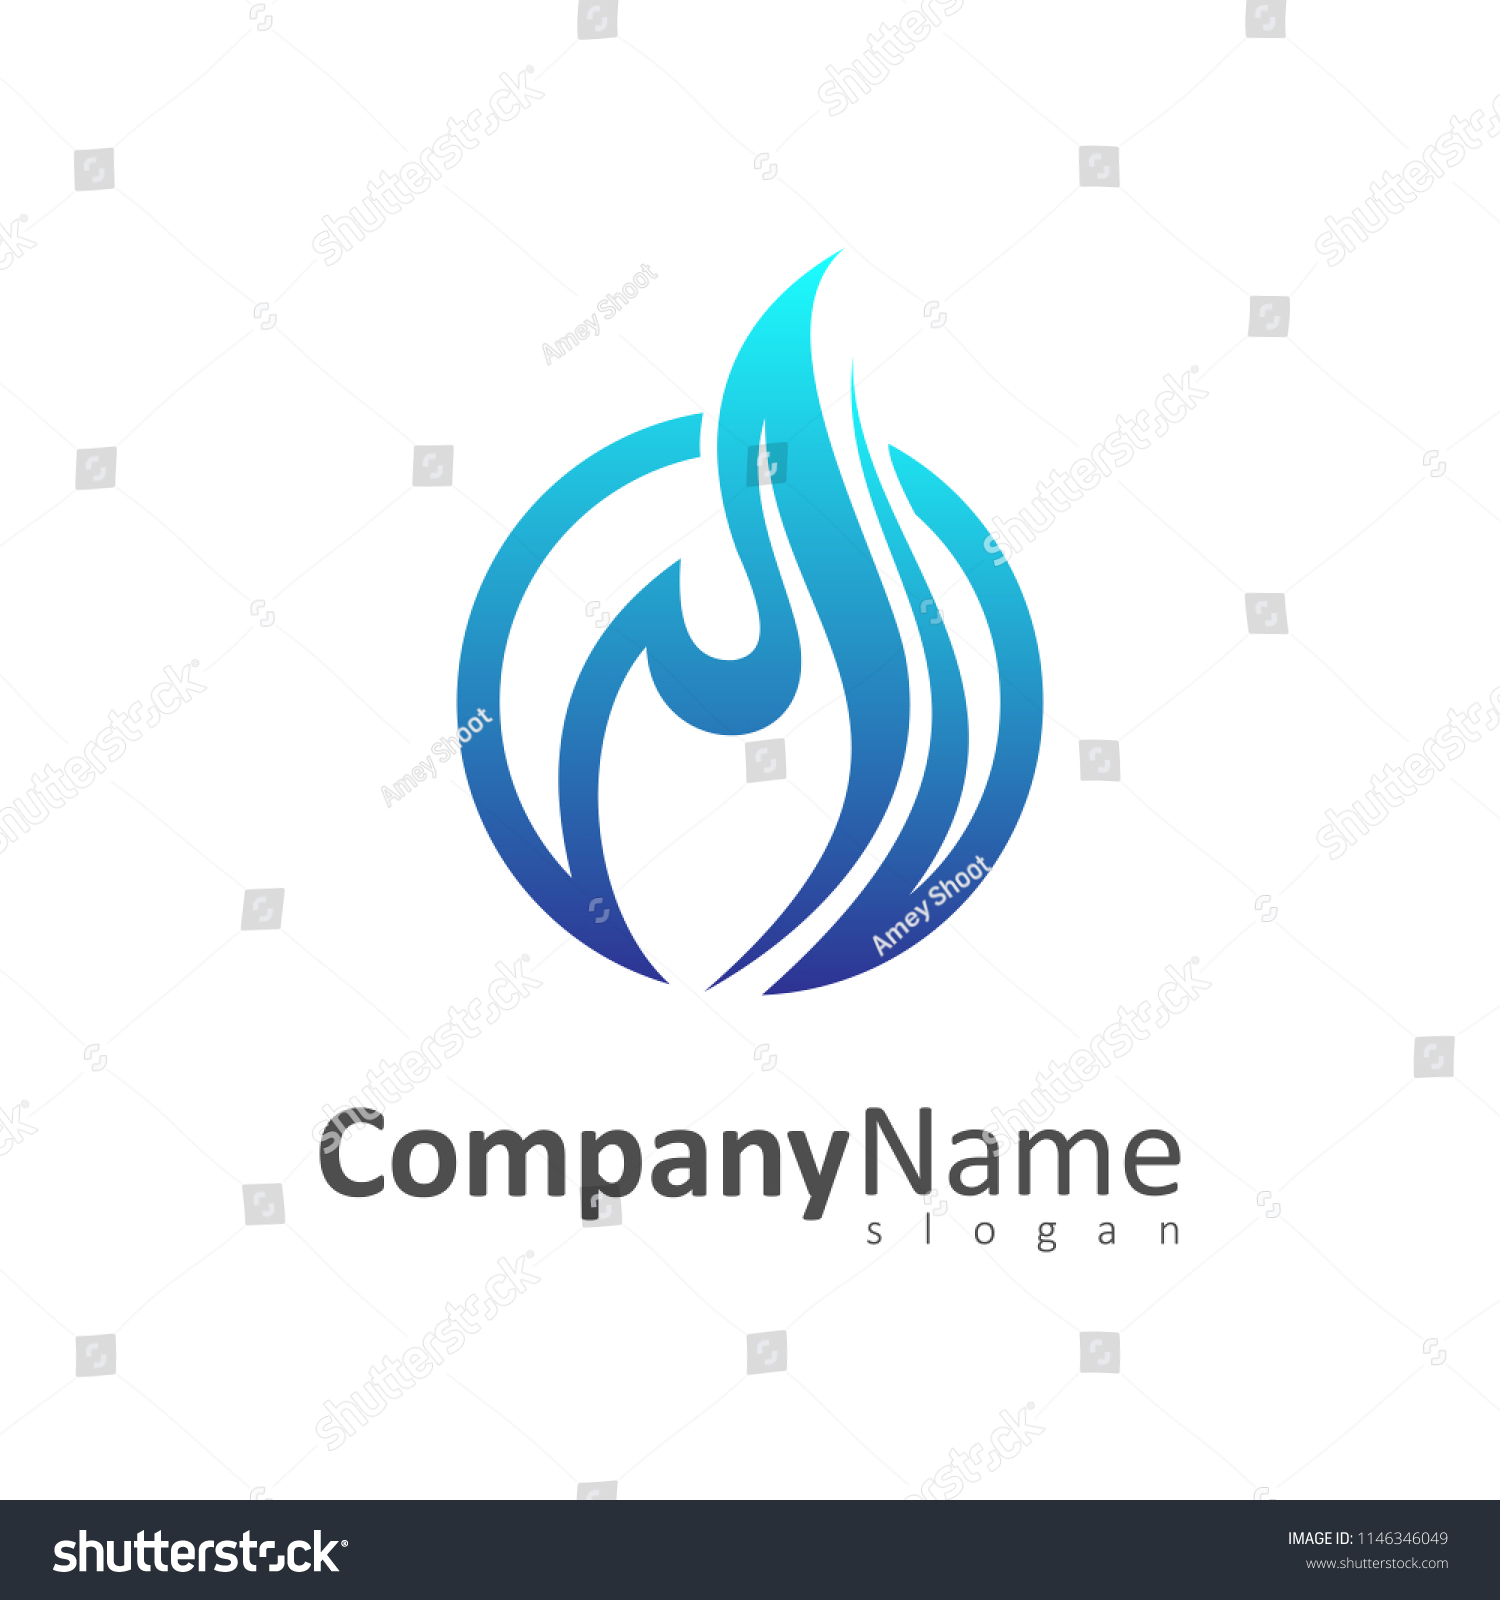 blue fire logo #1146346049